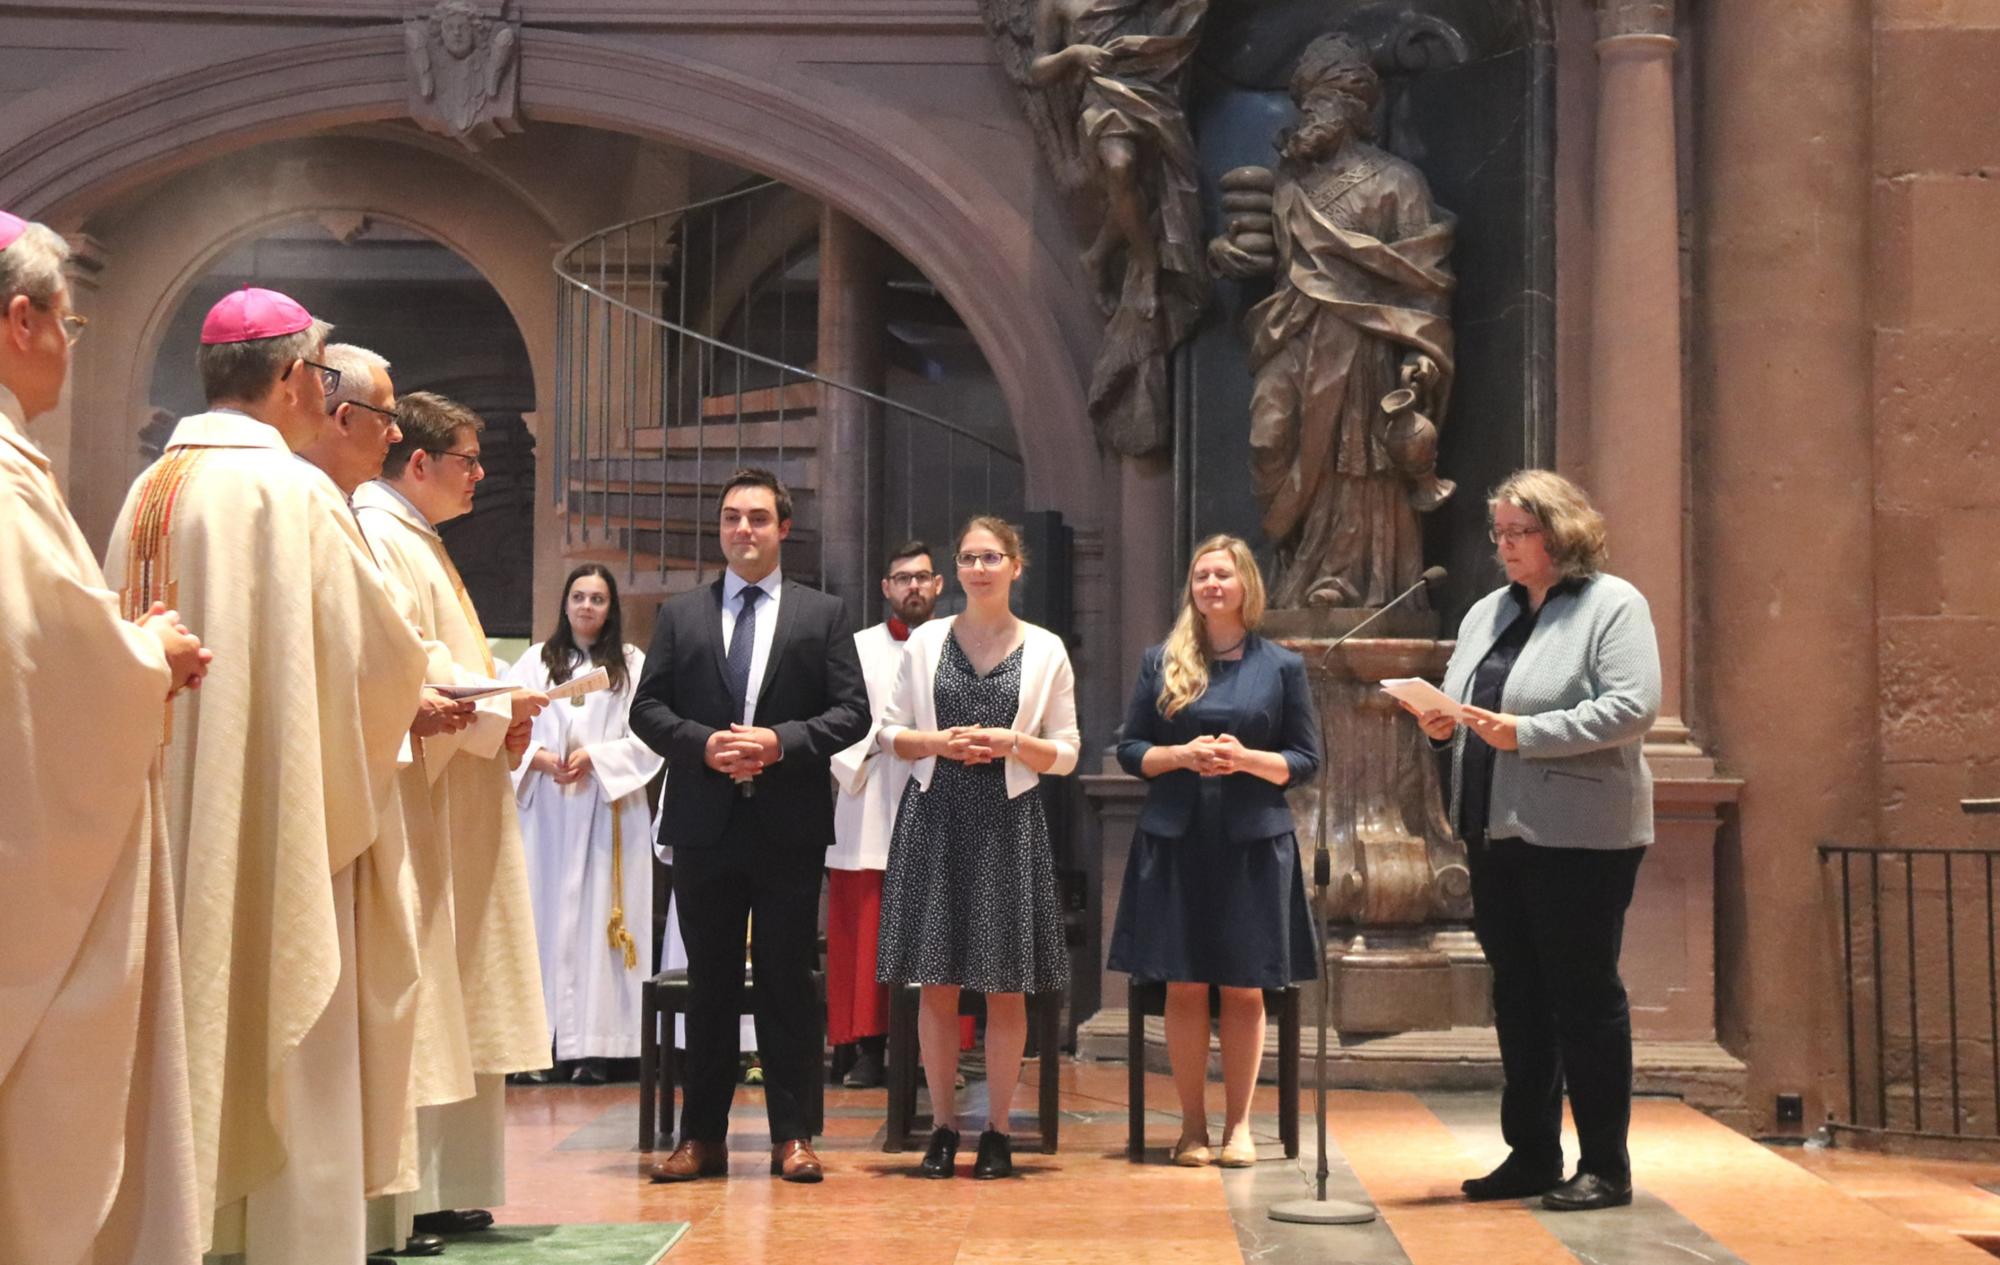 Mainz, 7.9.2019: Carola Daniel (r.) stellt die Kandiaten dem Bischof vor. (c) Bistum Mainz / Matschak